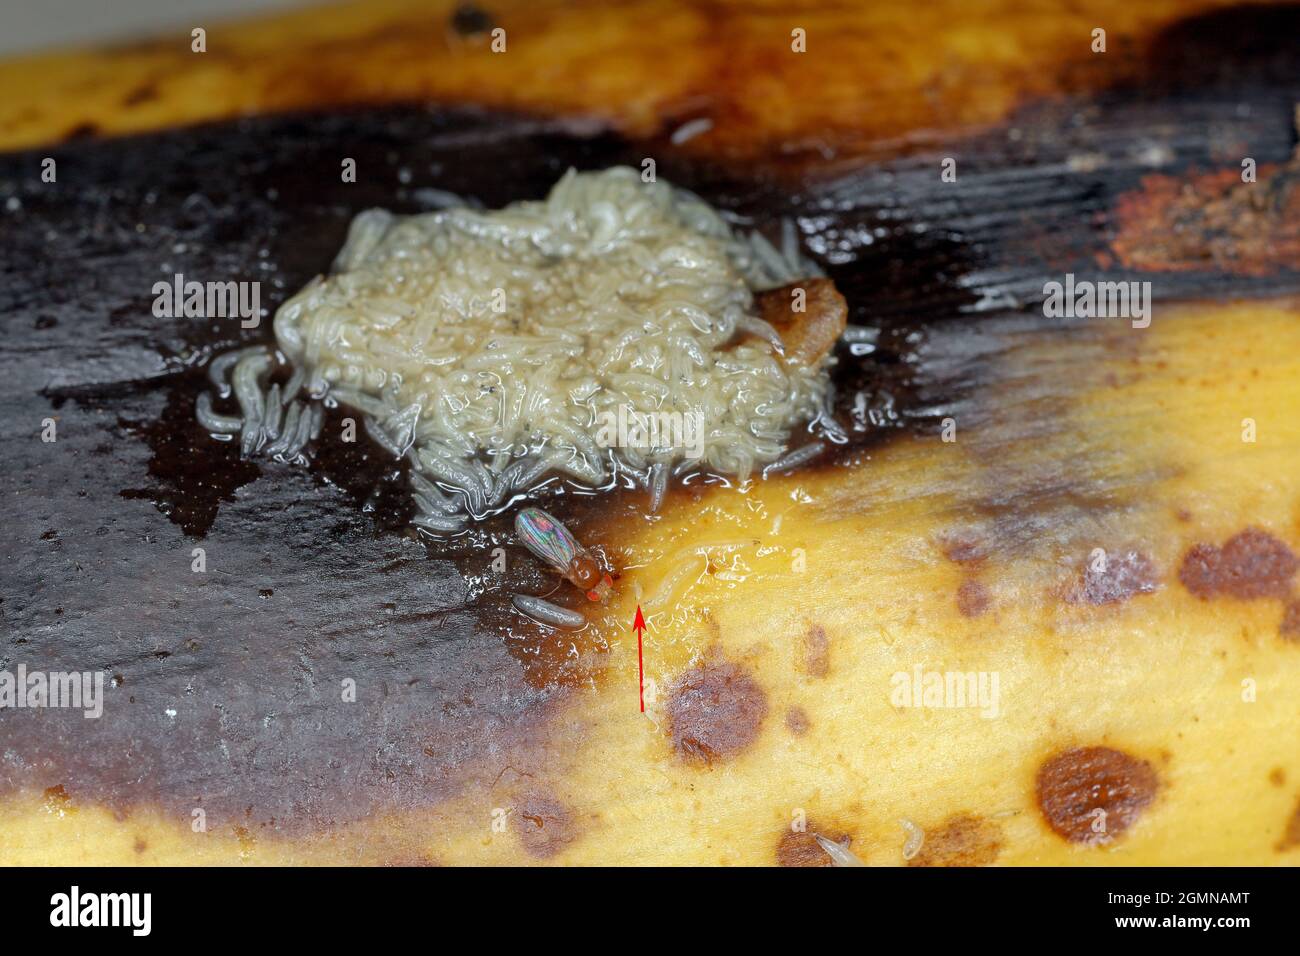 A ot di larve - maggot, adulto e uovo (freccia) - di mosca comune di frutta o aceto mosca - Drosophila melanogaster. È un nocciolo di frutta. Foto Stock